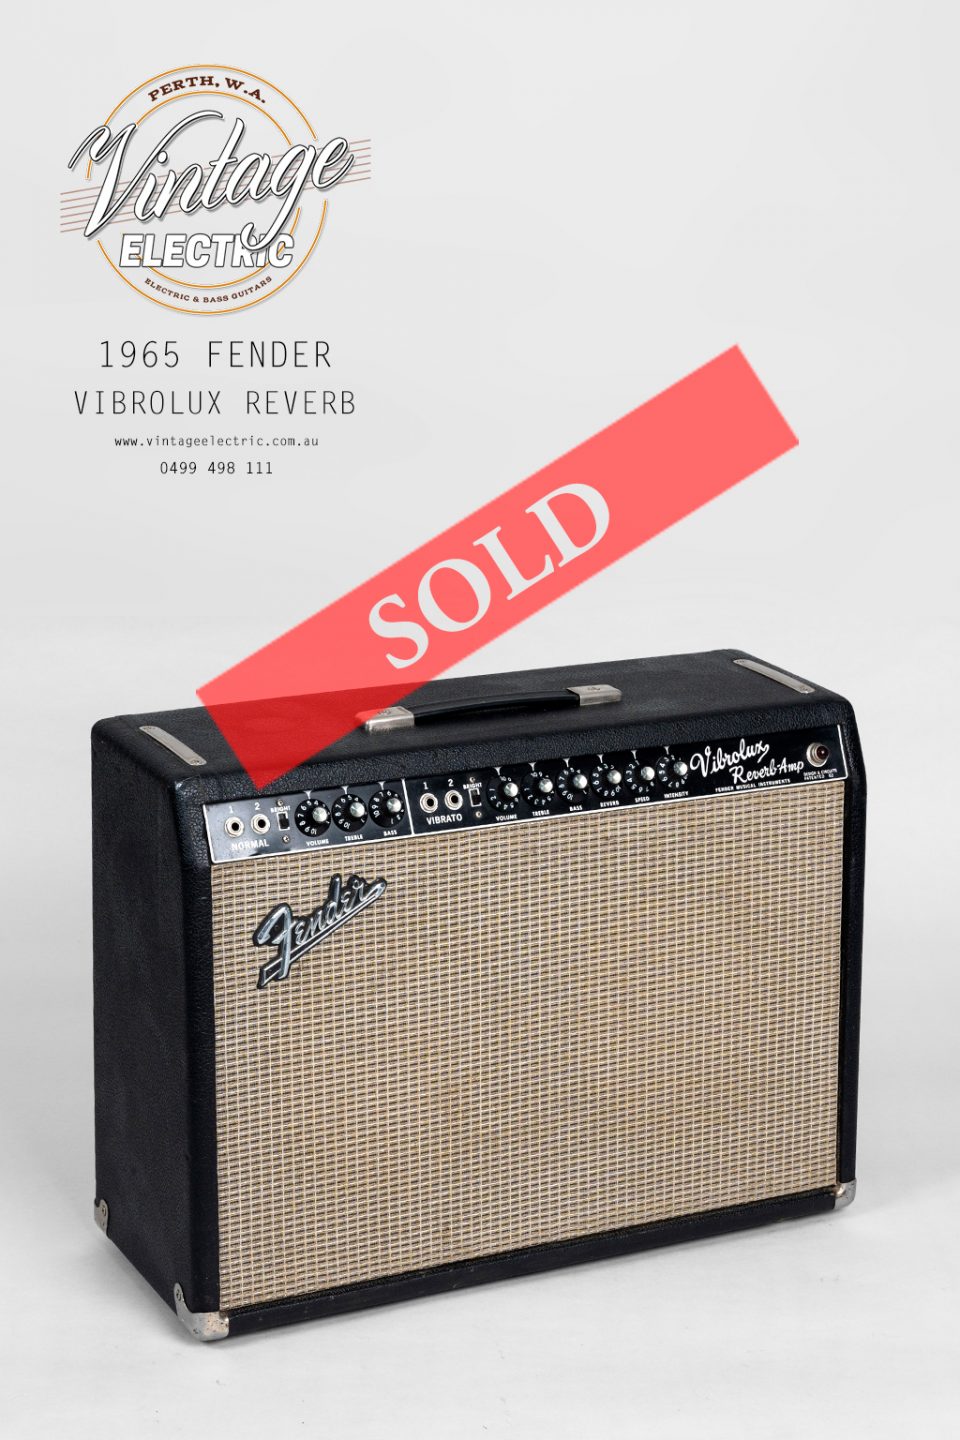 1965 Fender Vibrolux Reverb LARGE SOLD